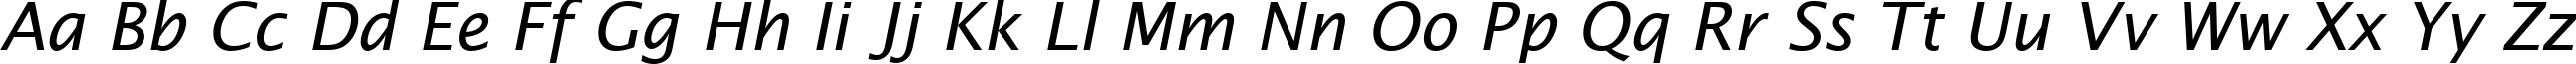 Пример написания английского алфавита шрифтом Lucida Sans Italic